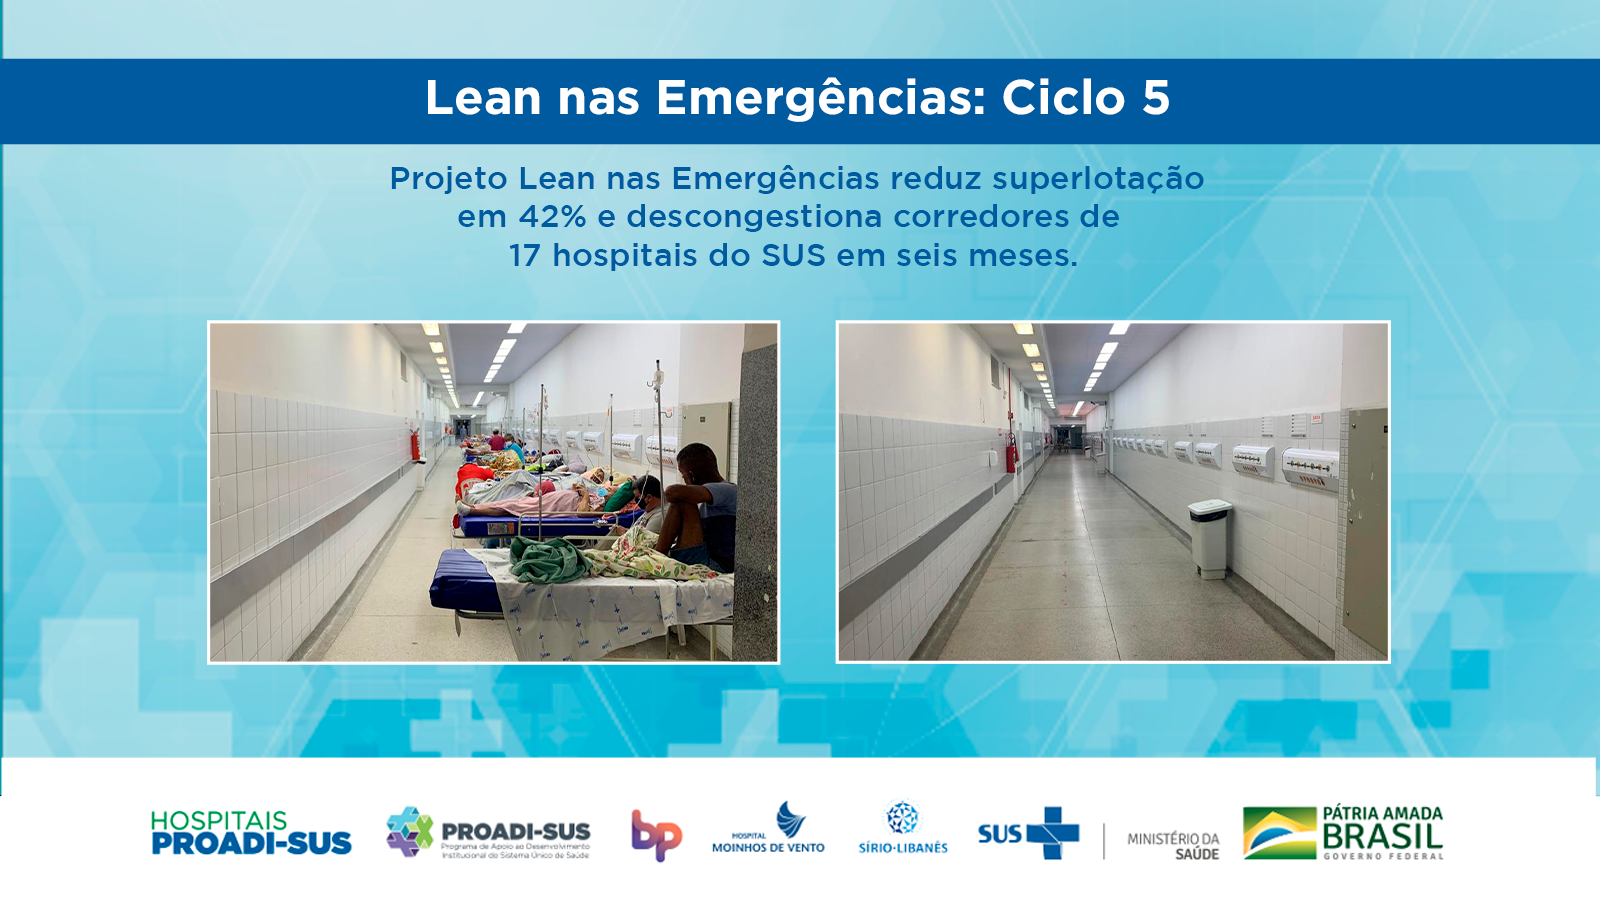 Projeto Lean nas Emergências celebra redução de 43% no índice de superlotação em hospitais públicos e filantrópicos